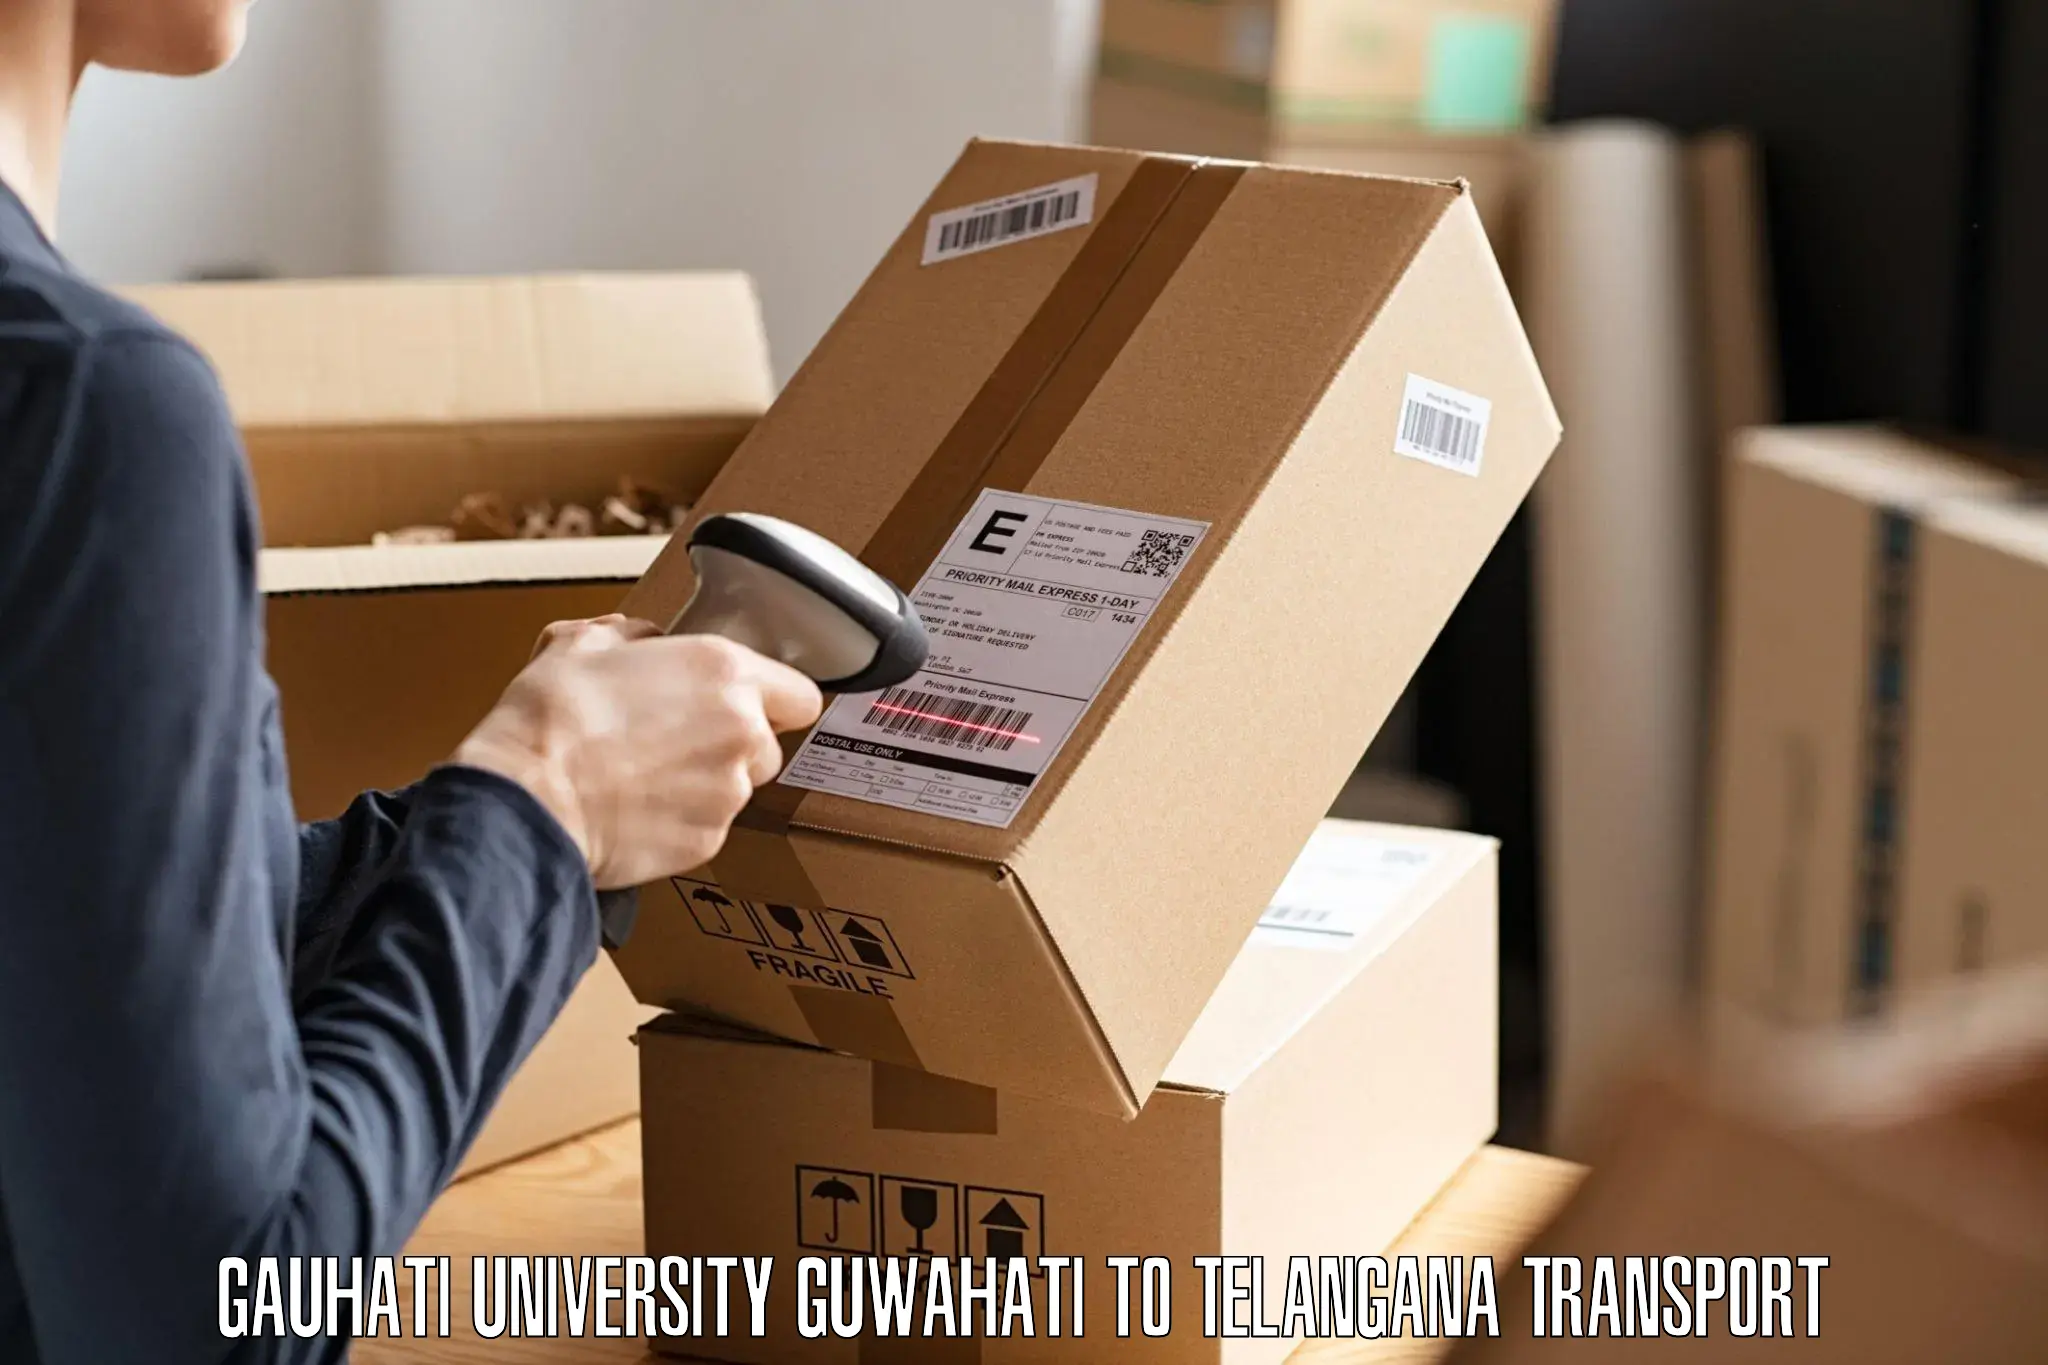 Transport services Gauhati University Guwahati to Shamshabad